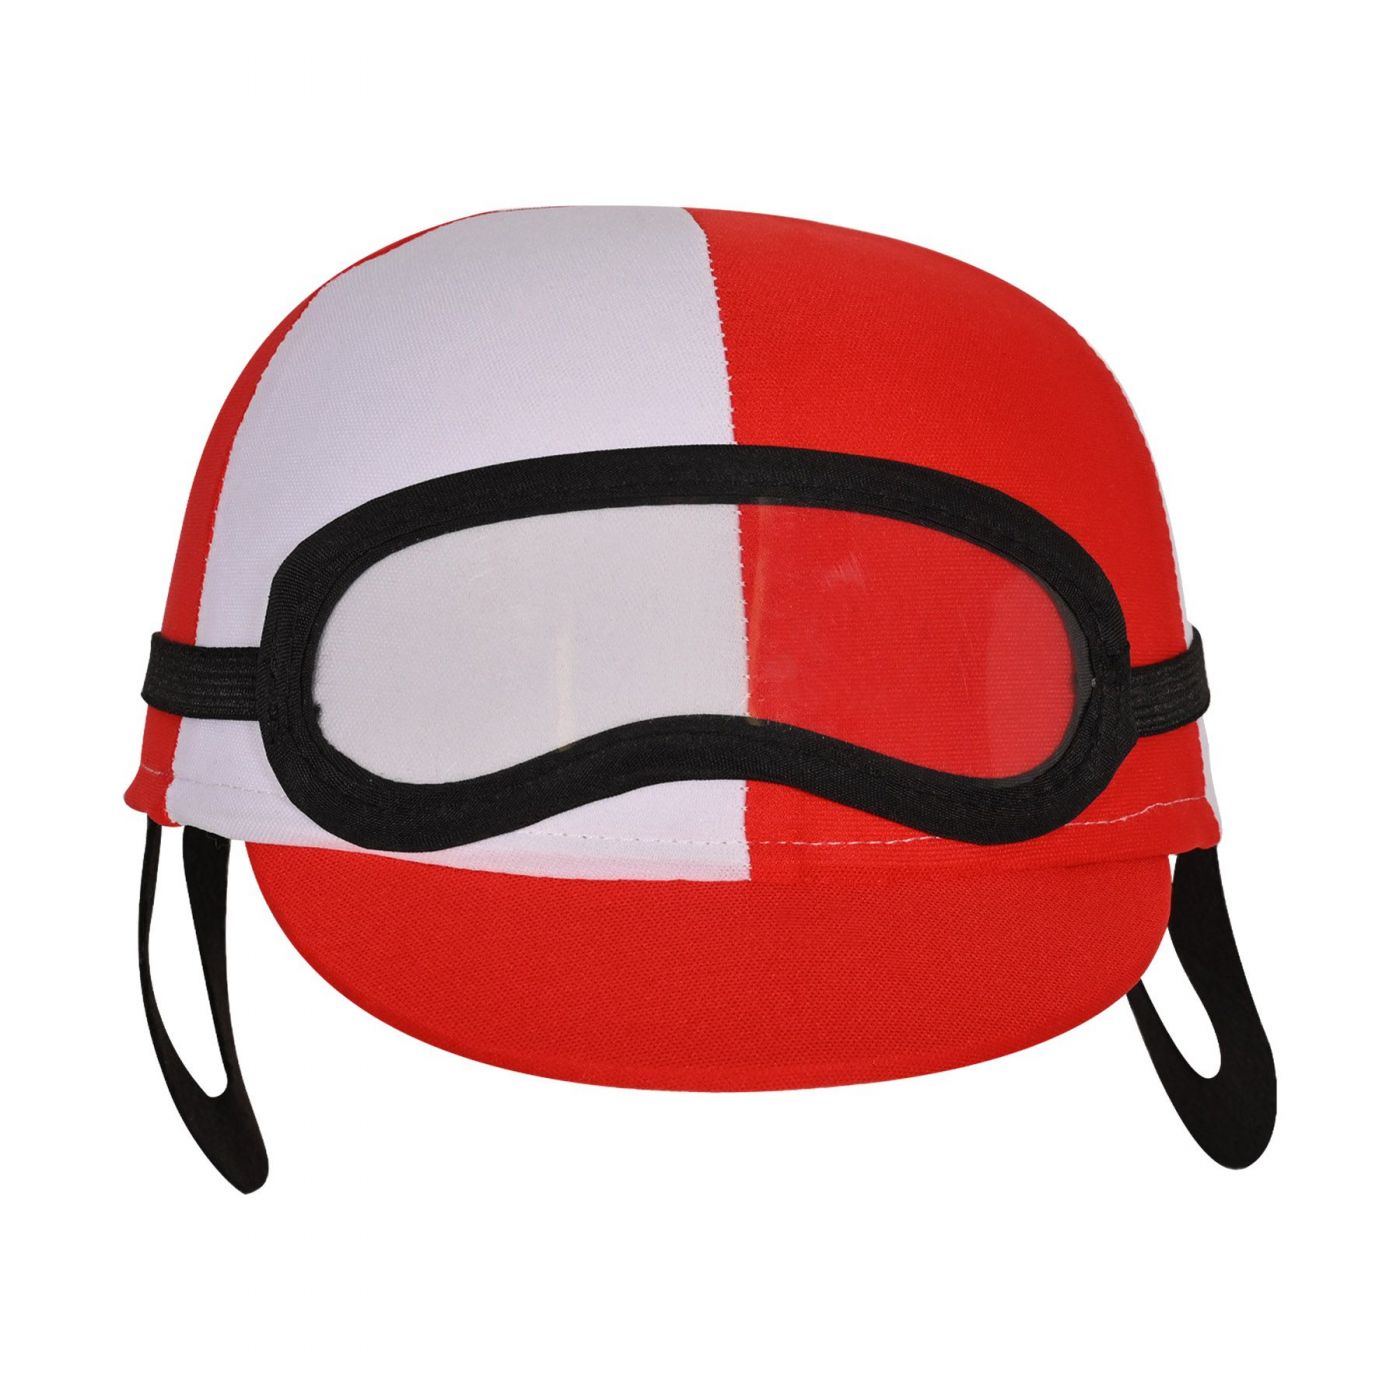 Jockey Helmet (6) image